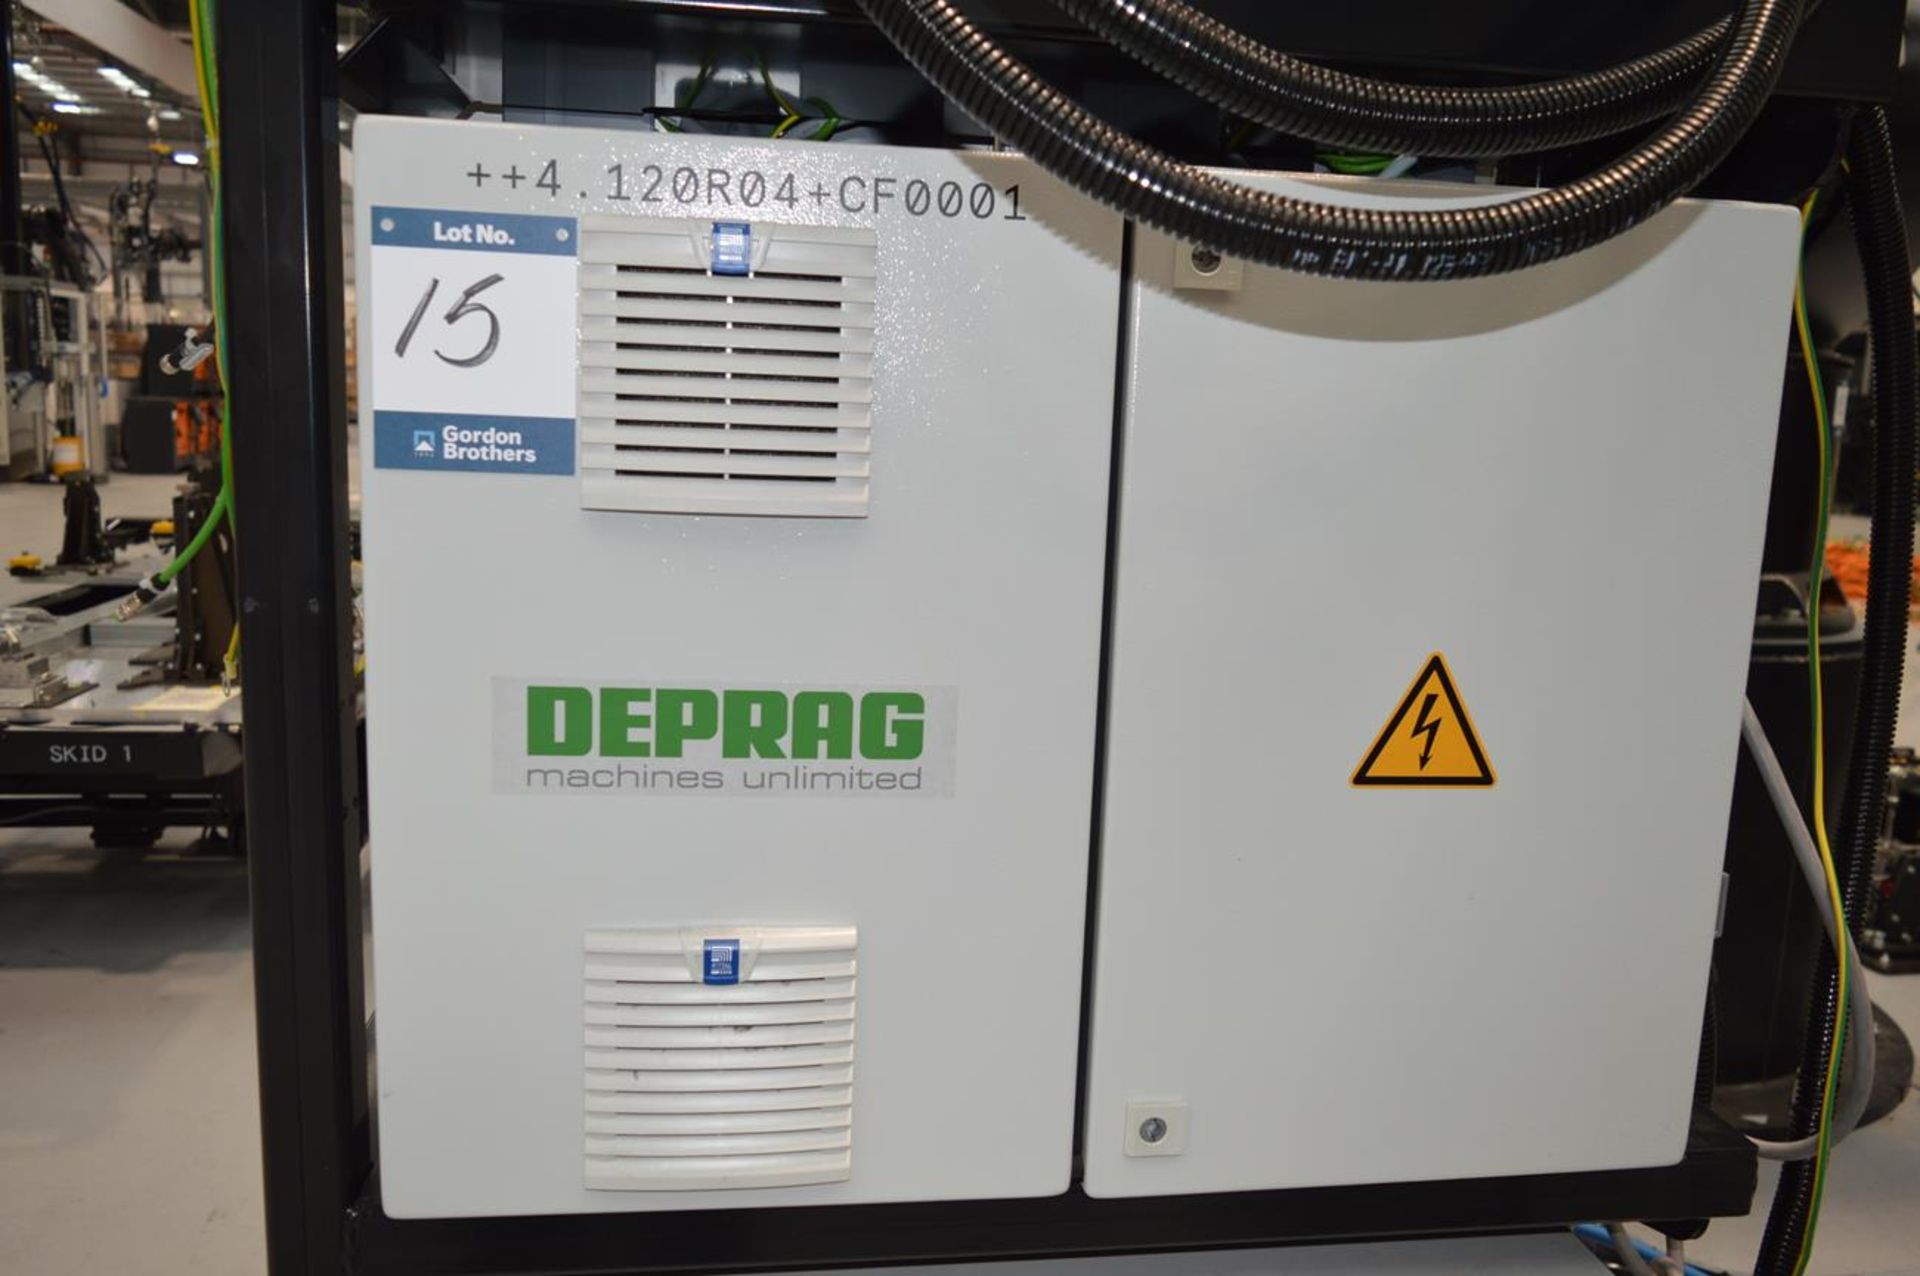 Deprag, ADFS-2-1508-1 Flowform adaptive DFS controller, Serial No. 1393274/21 including freeform